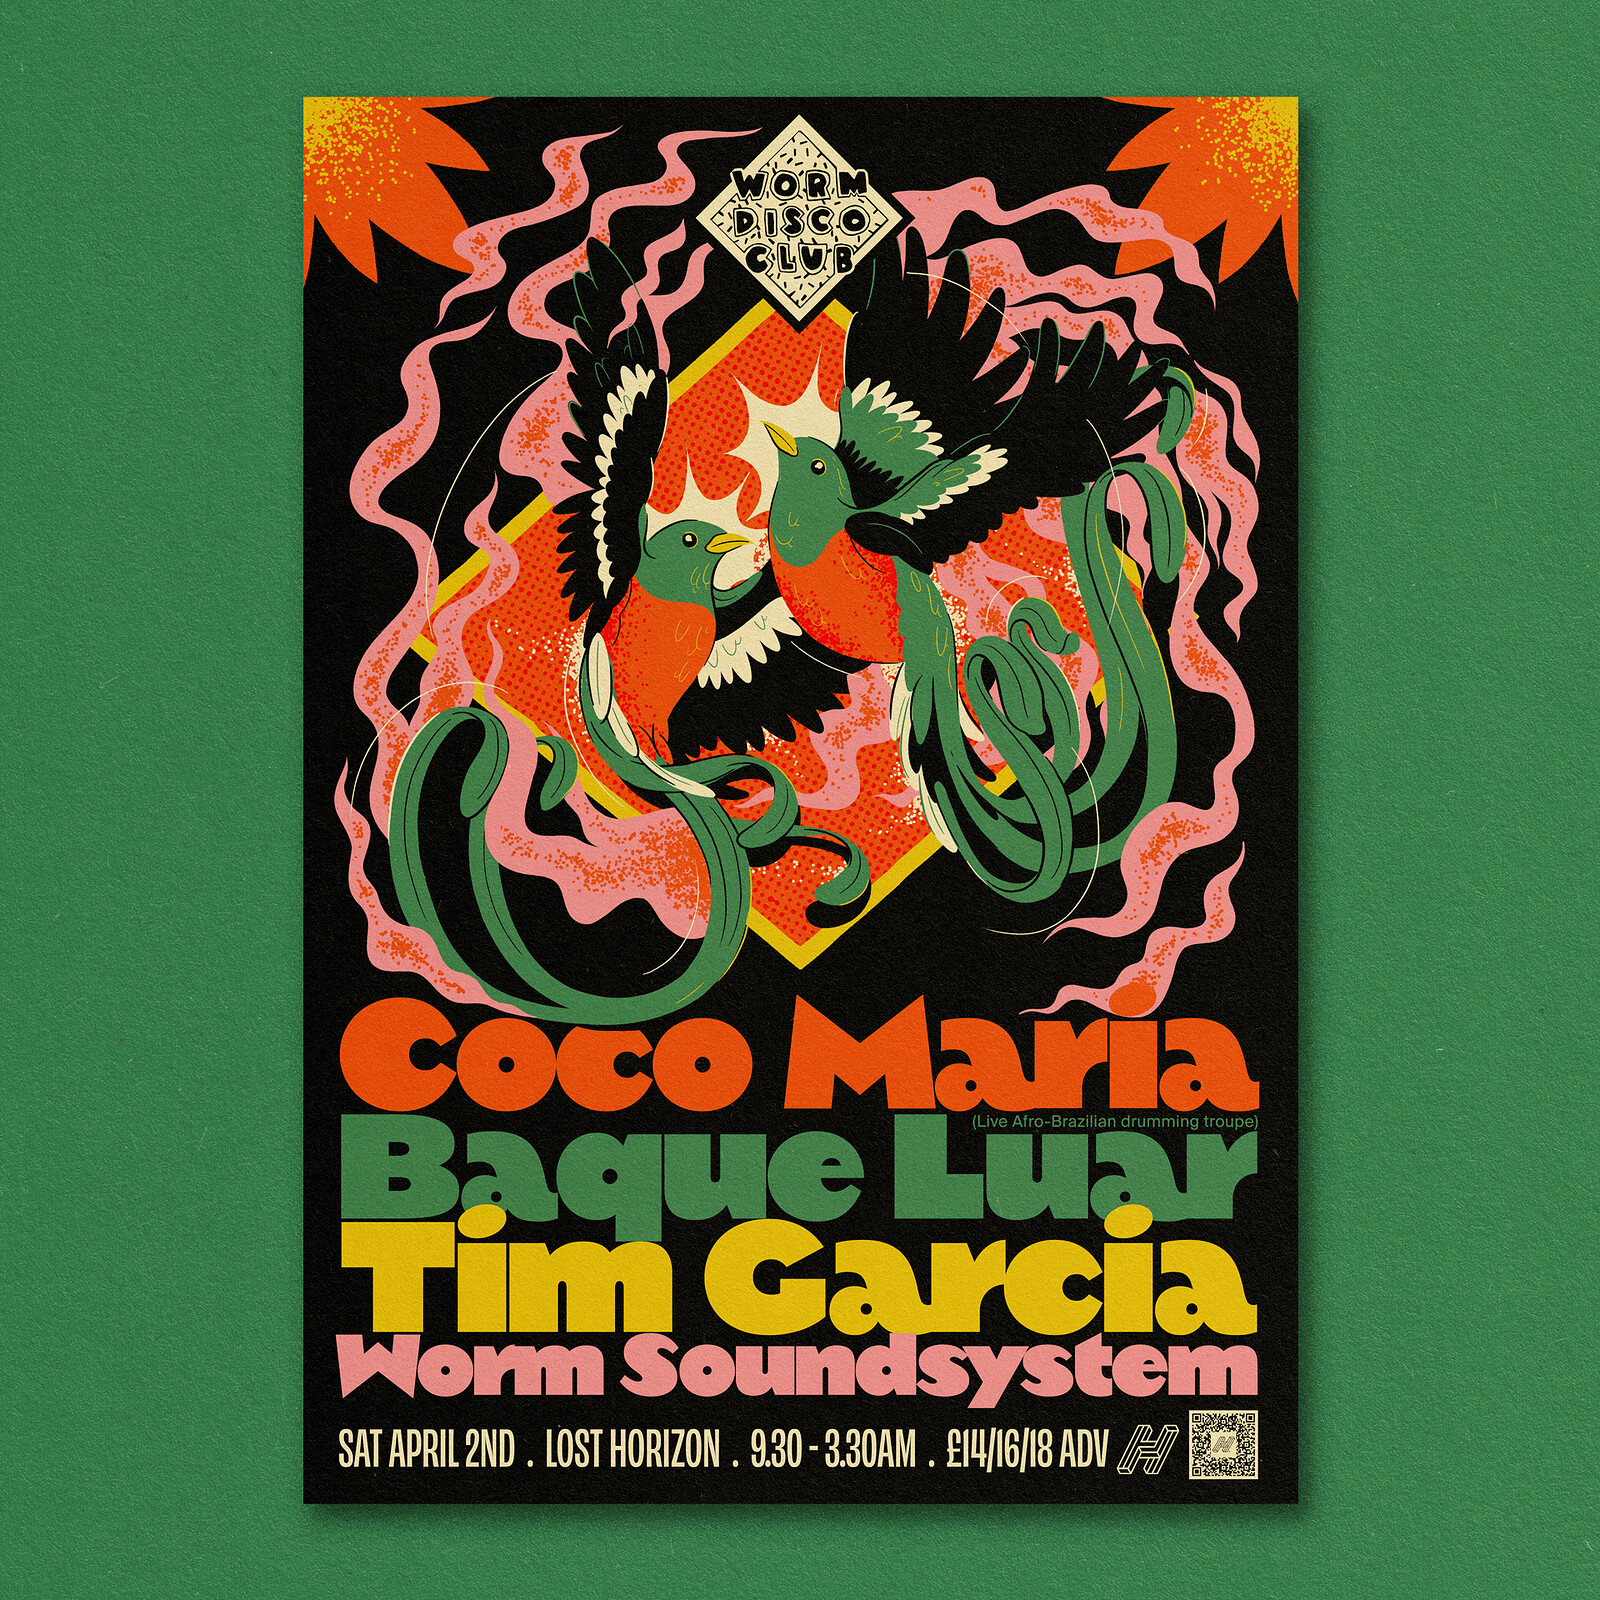 Worm Disco Club:Coco Maria, Tim Garcia, Baque Luar at Lost Horizon